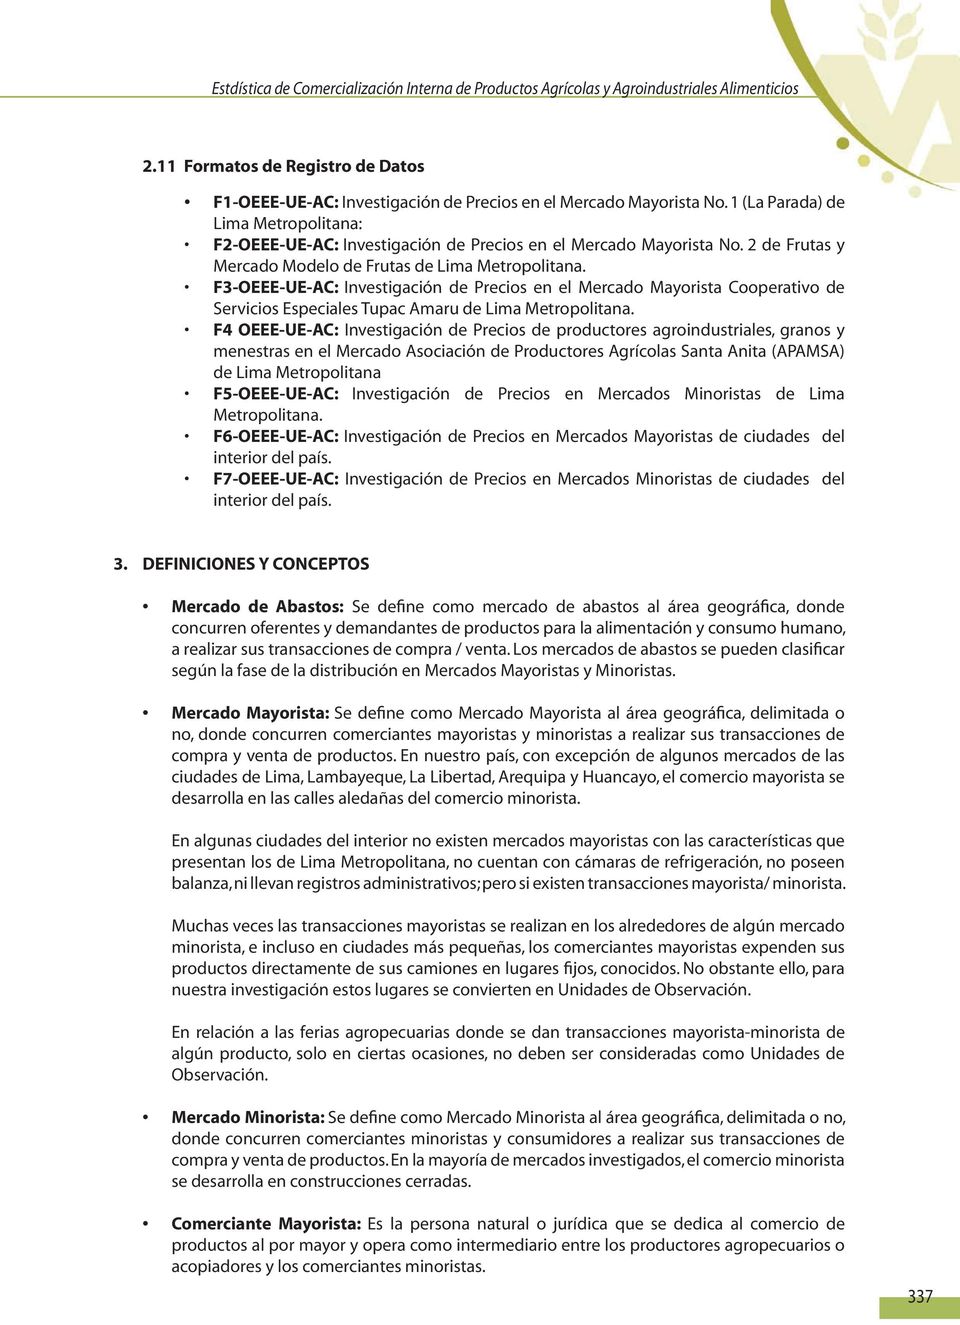 F3-OEEE-UE-AC: Investigación de Precios en el Mercado Mayorista Cooperativo de Servicios Especiales Tupac Amaru de Lima Metropolitana.